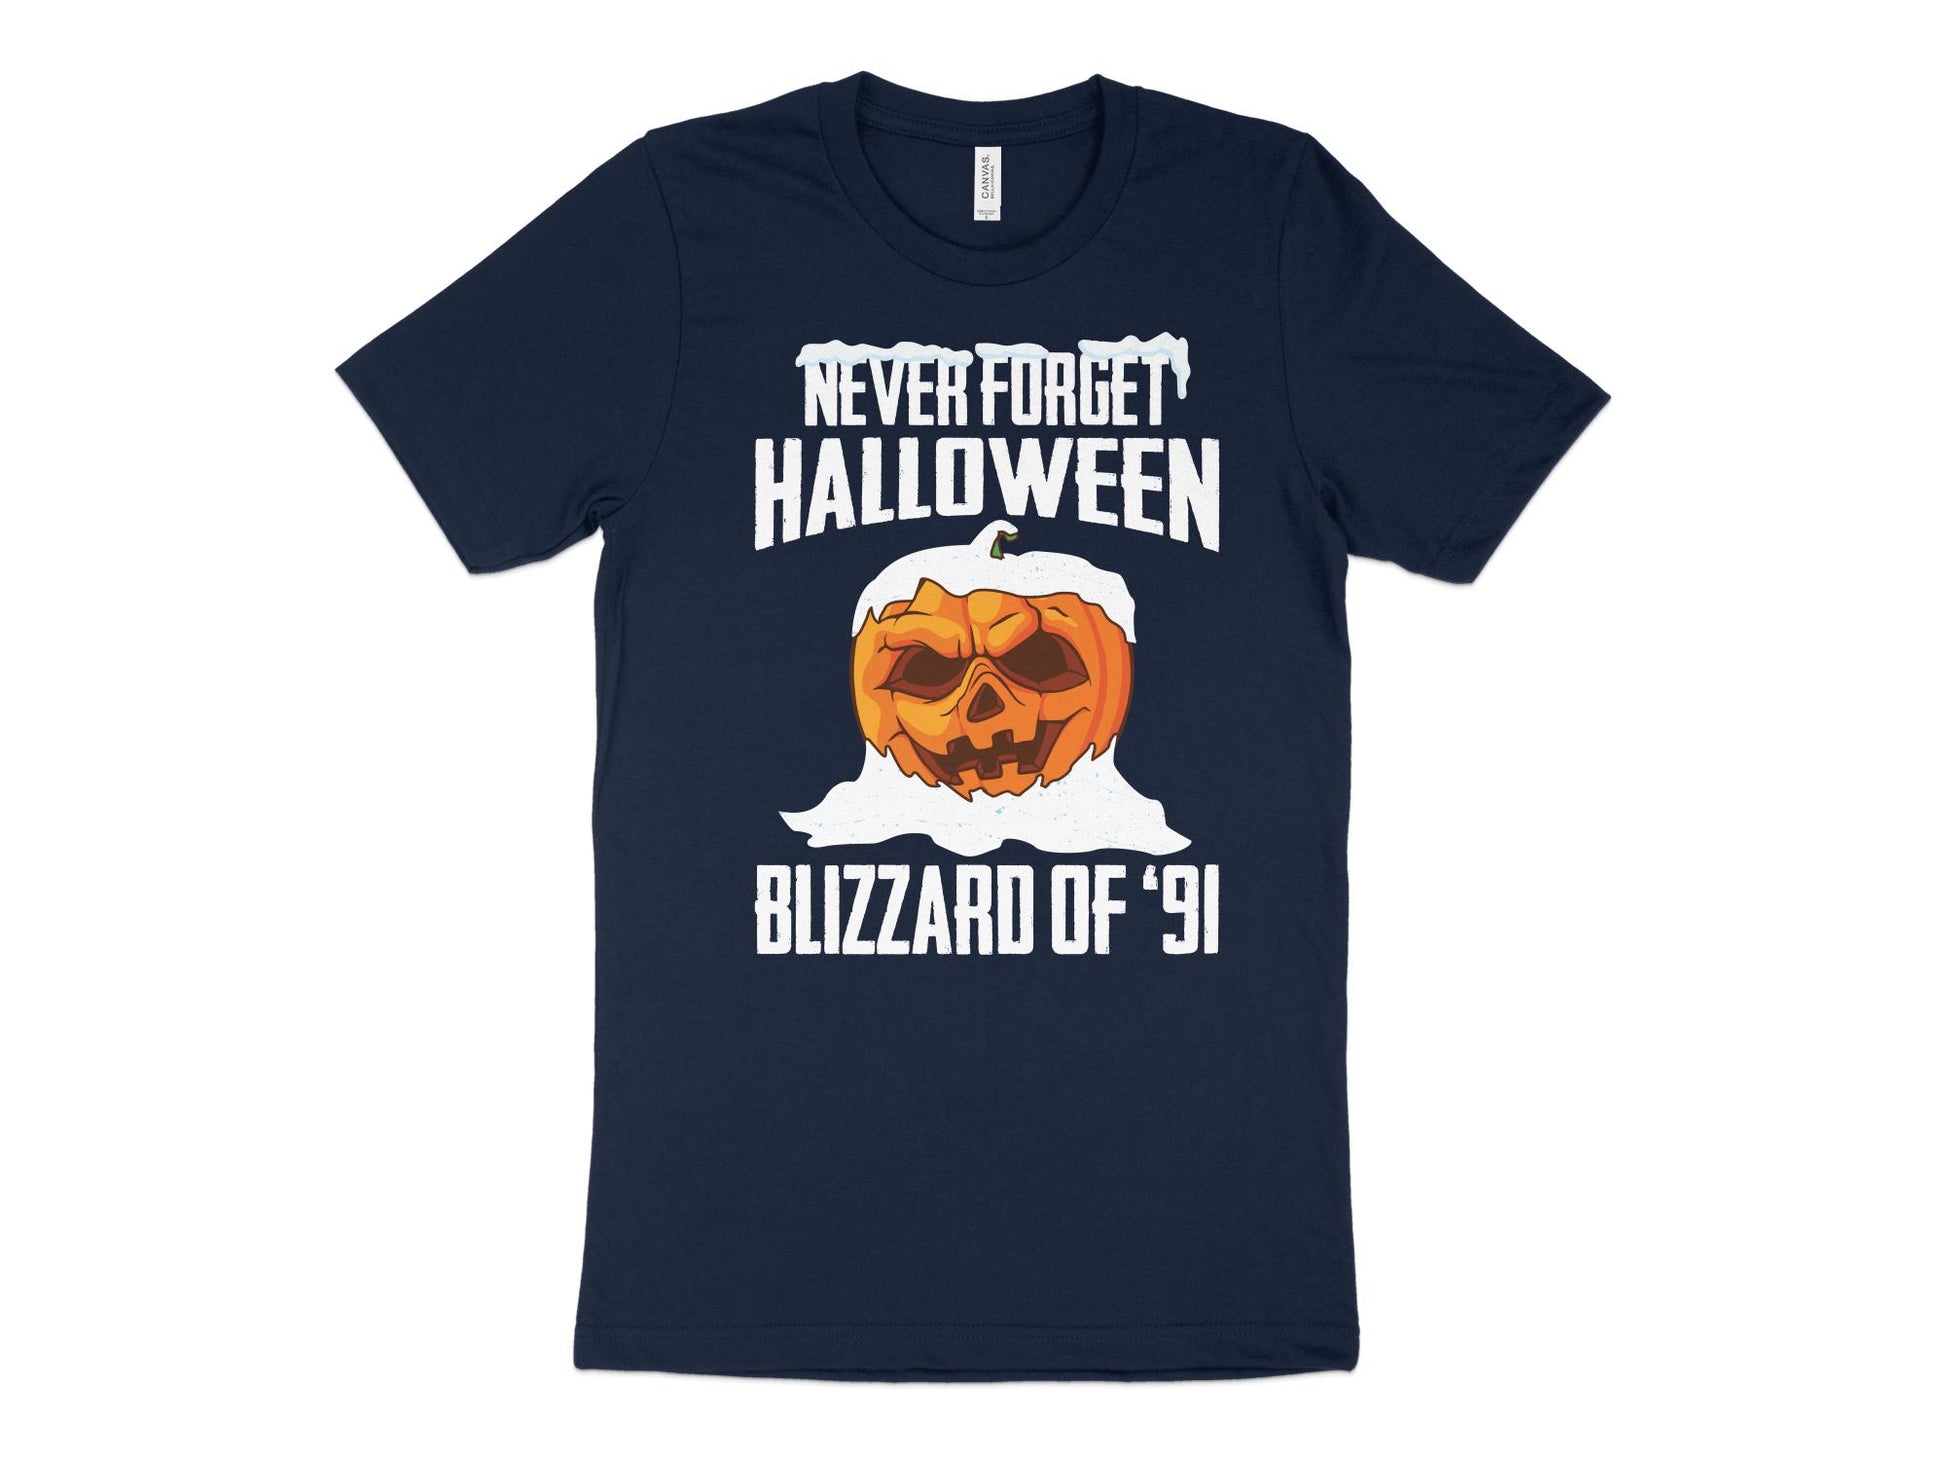 Minnesota Blizzard Halloween 1991 Shirt, navy blue